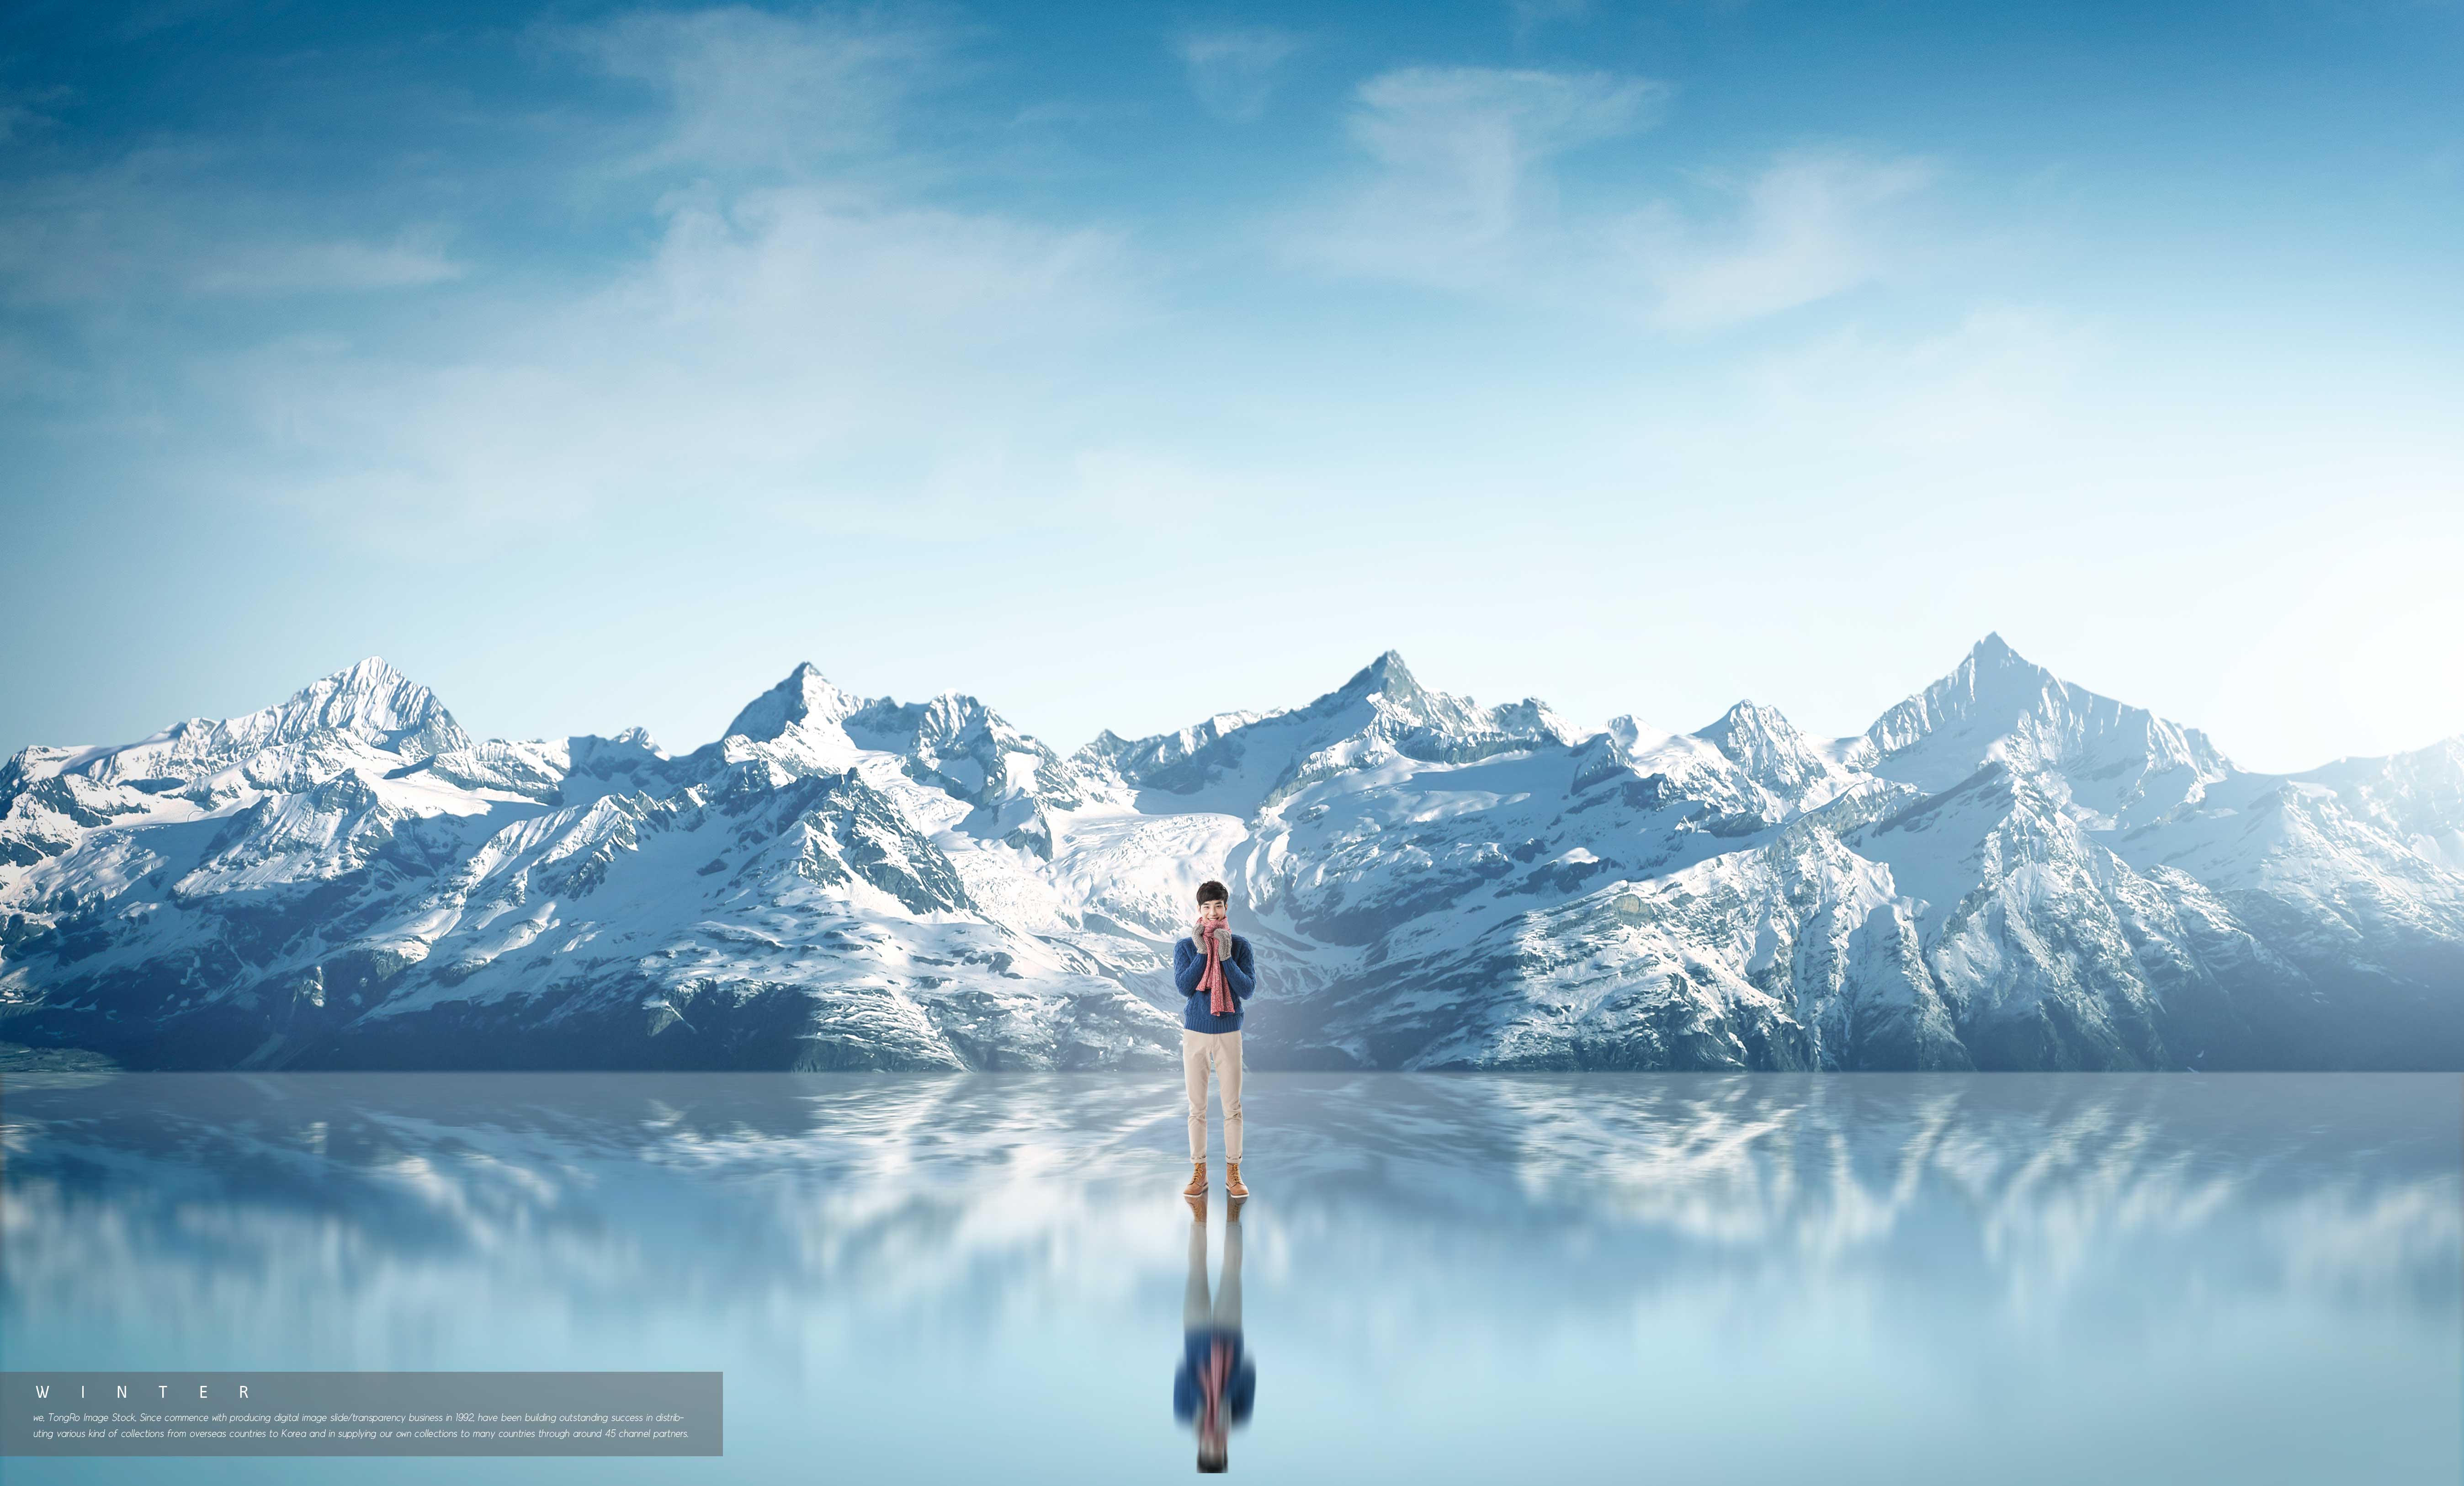 冬季背景图雪山镜像湖面psd素材设计素材模板